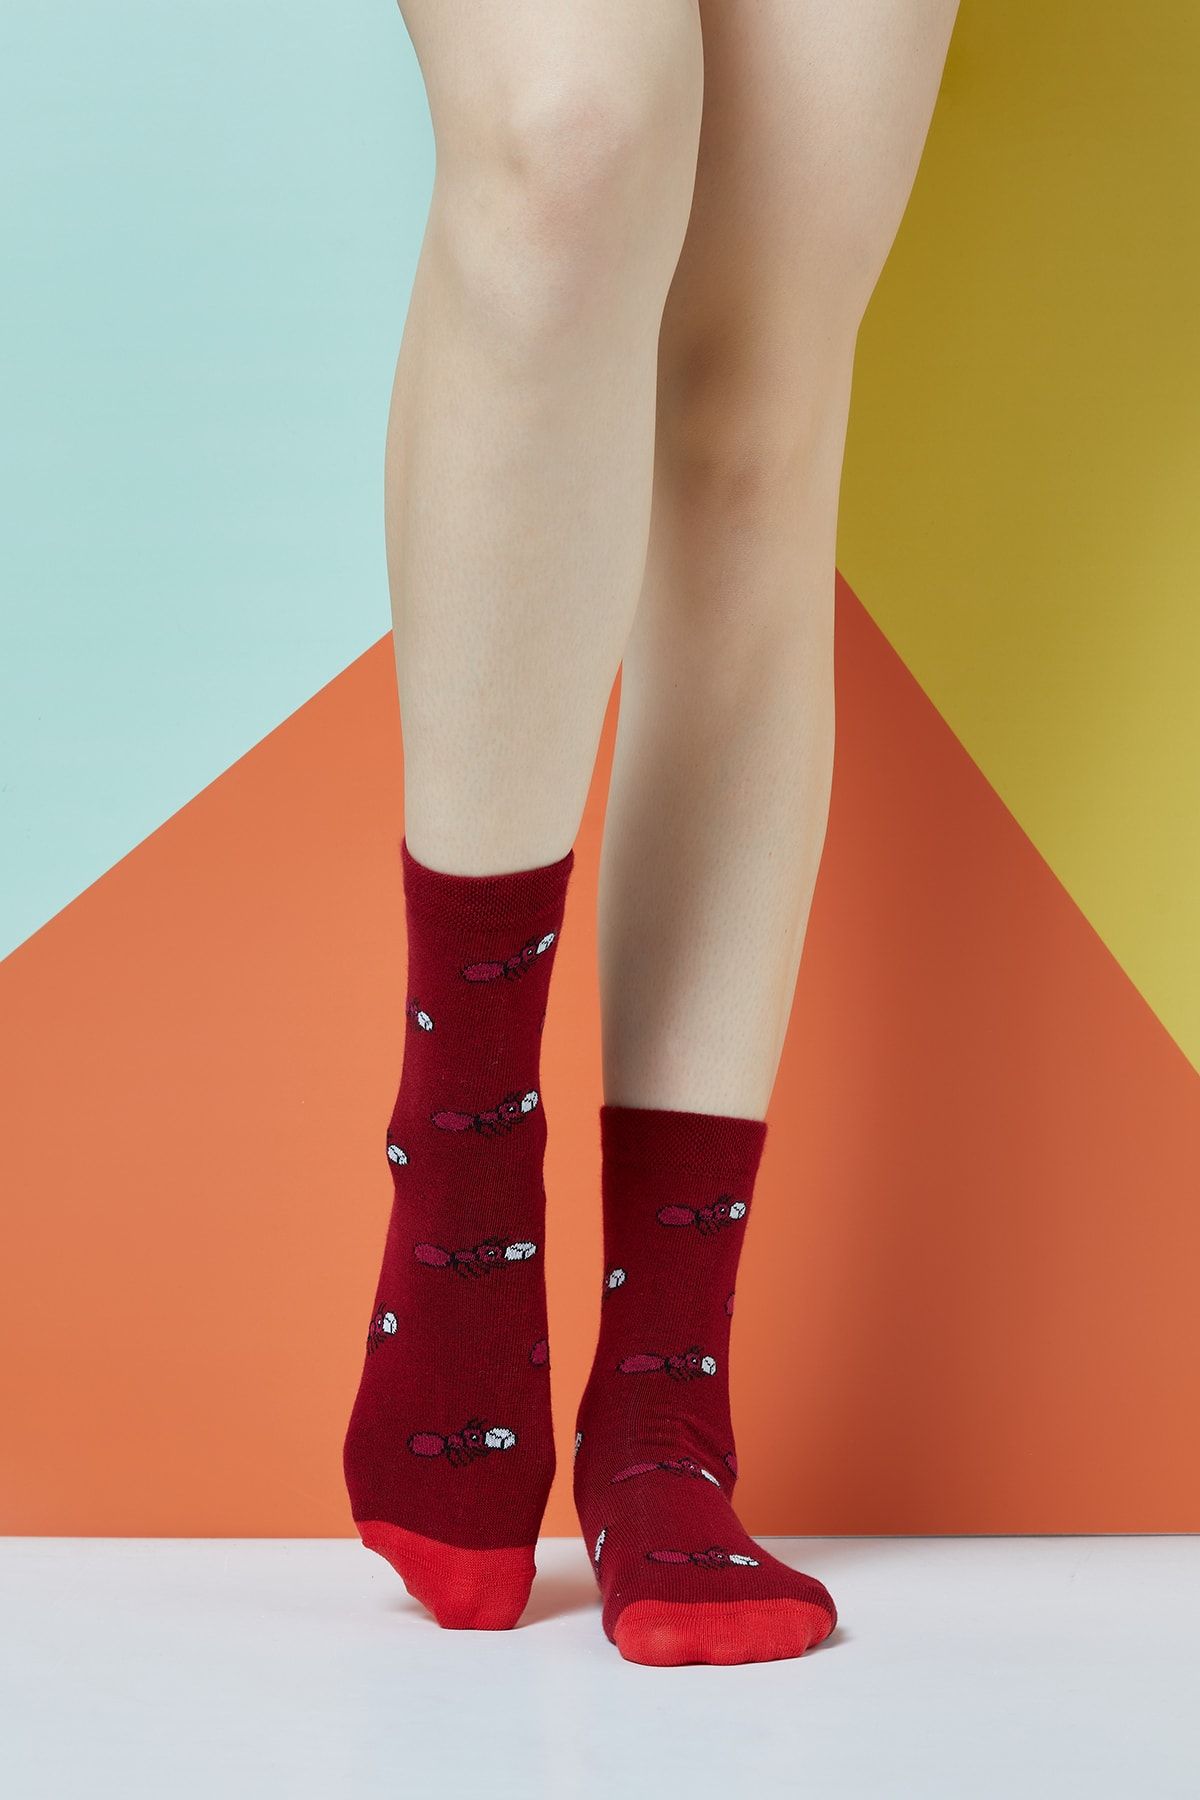 The Socks Company Kadın Çok Renkli Hard Working Desenli Çorap